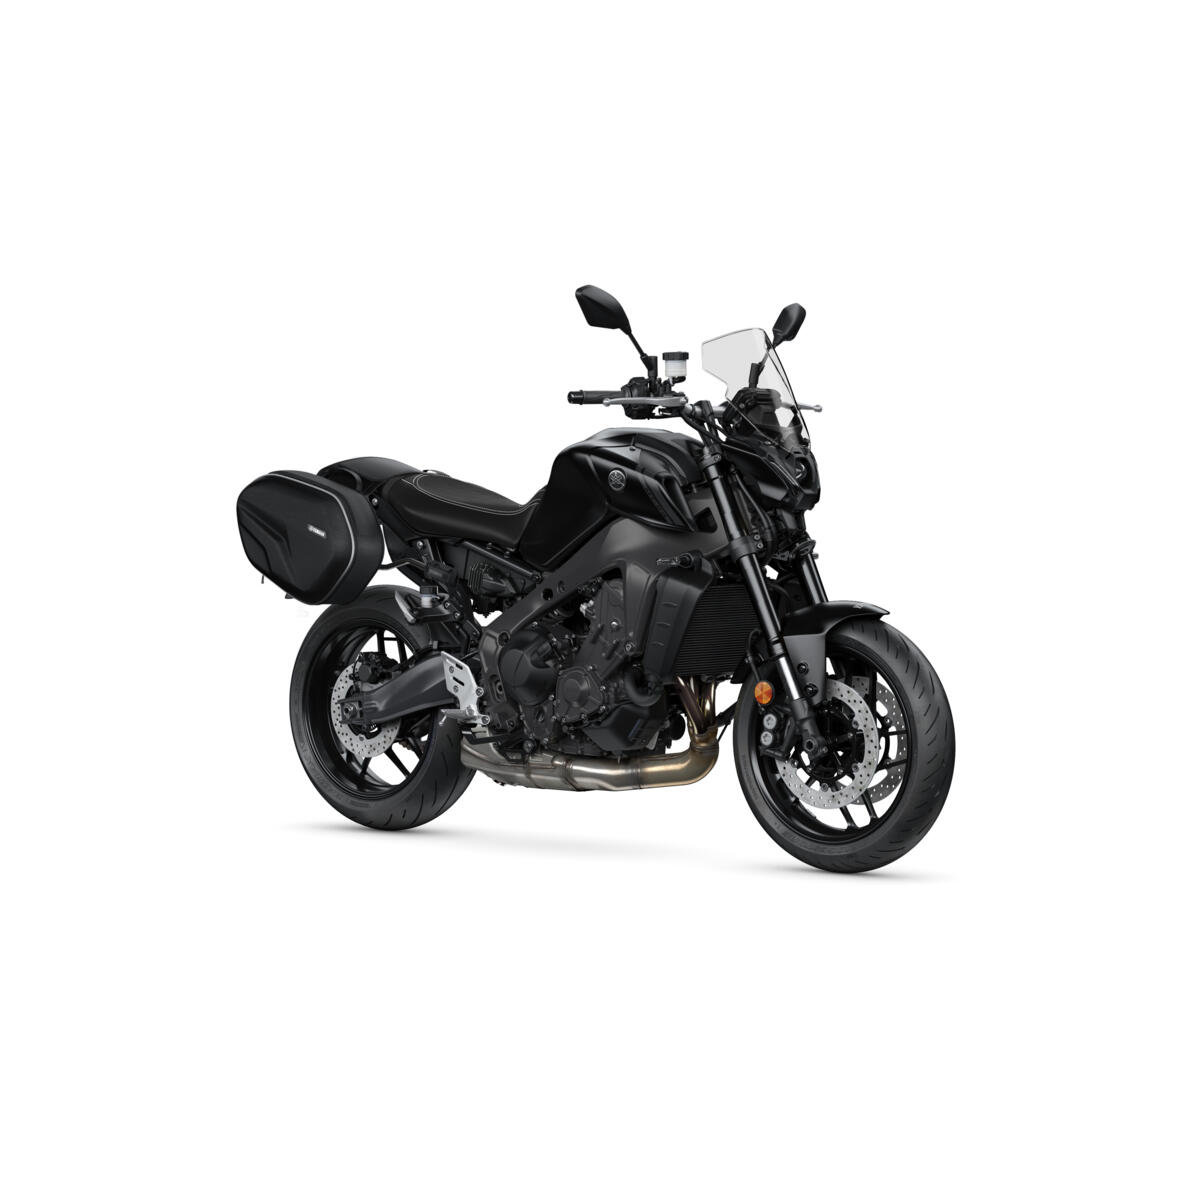 Dankzij de natuurlijke rijpositie en de uitstekende actieradius is uw MT-09 de perfecte motorfiets voor weekendjes weg. 
Yamaha heeft daarom het Weekend Pack gecreëerd om volop te kunnen genieten van elke minuut van de dag, op of naast de motorfiets.